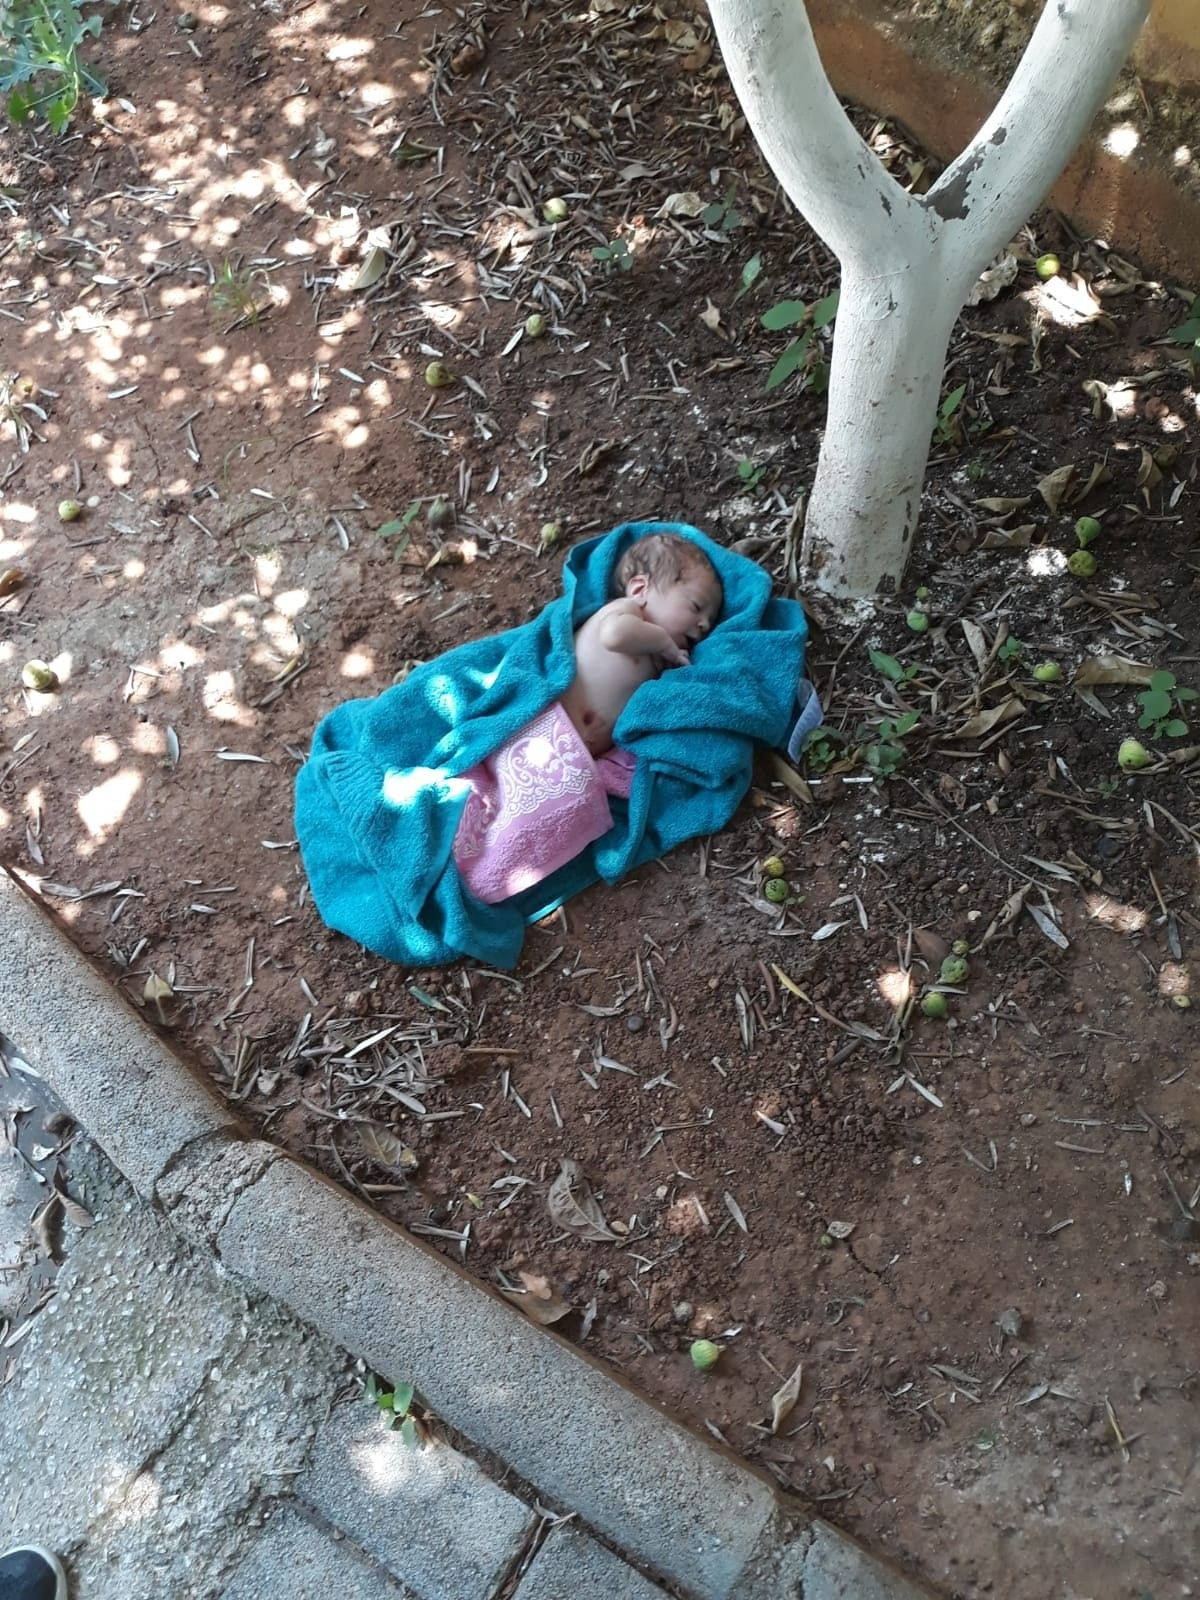 Antalya'da cami bahçesine yeni doğmuş erkek bebek bırakıldı